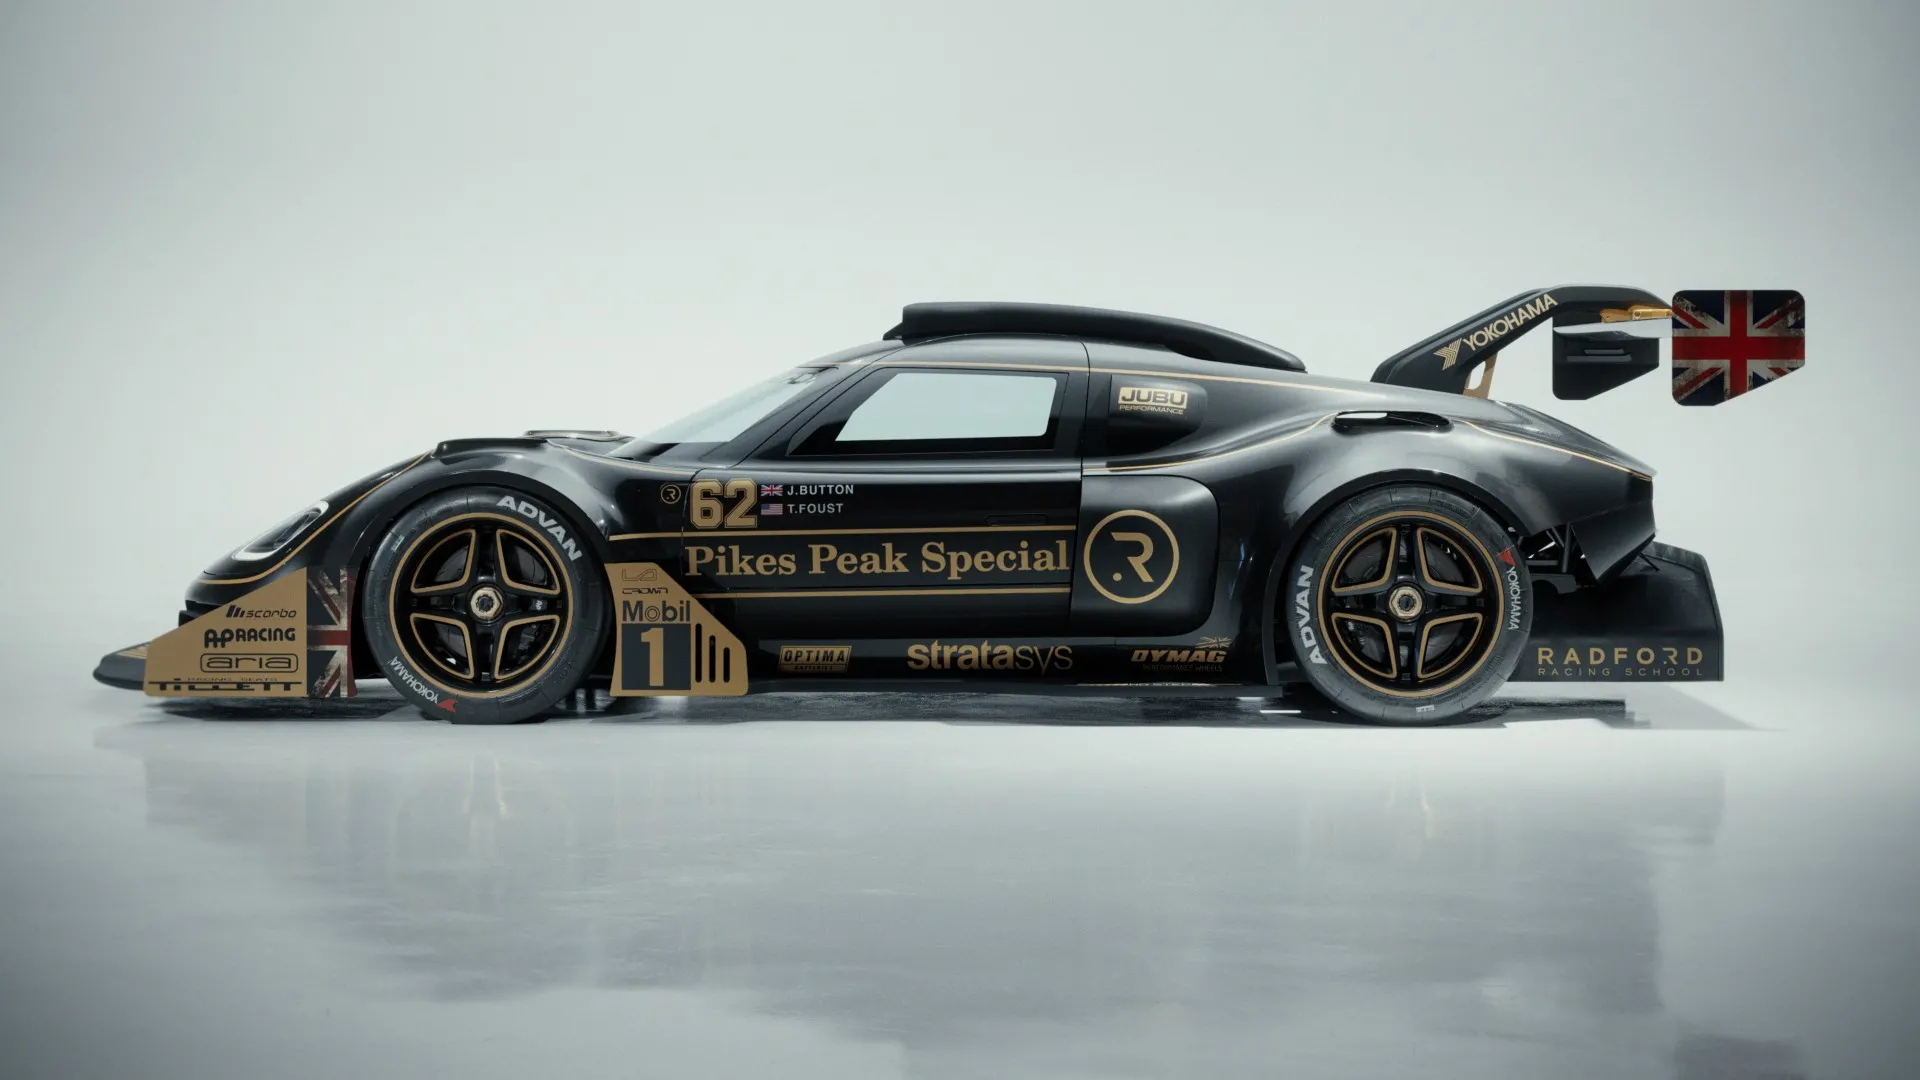 Radford tratará de conquistar Pikes Peak con este coche inspirado en Lotus